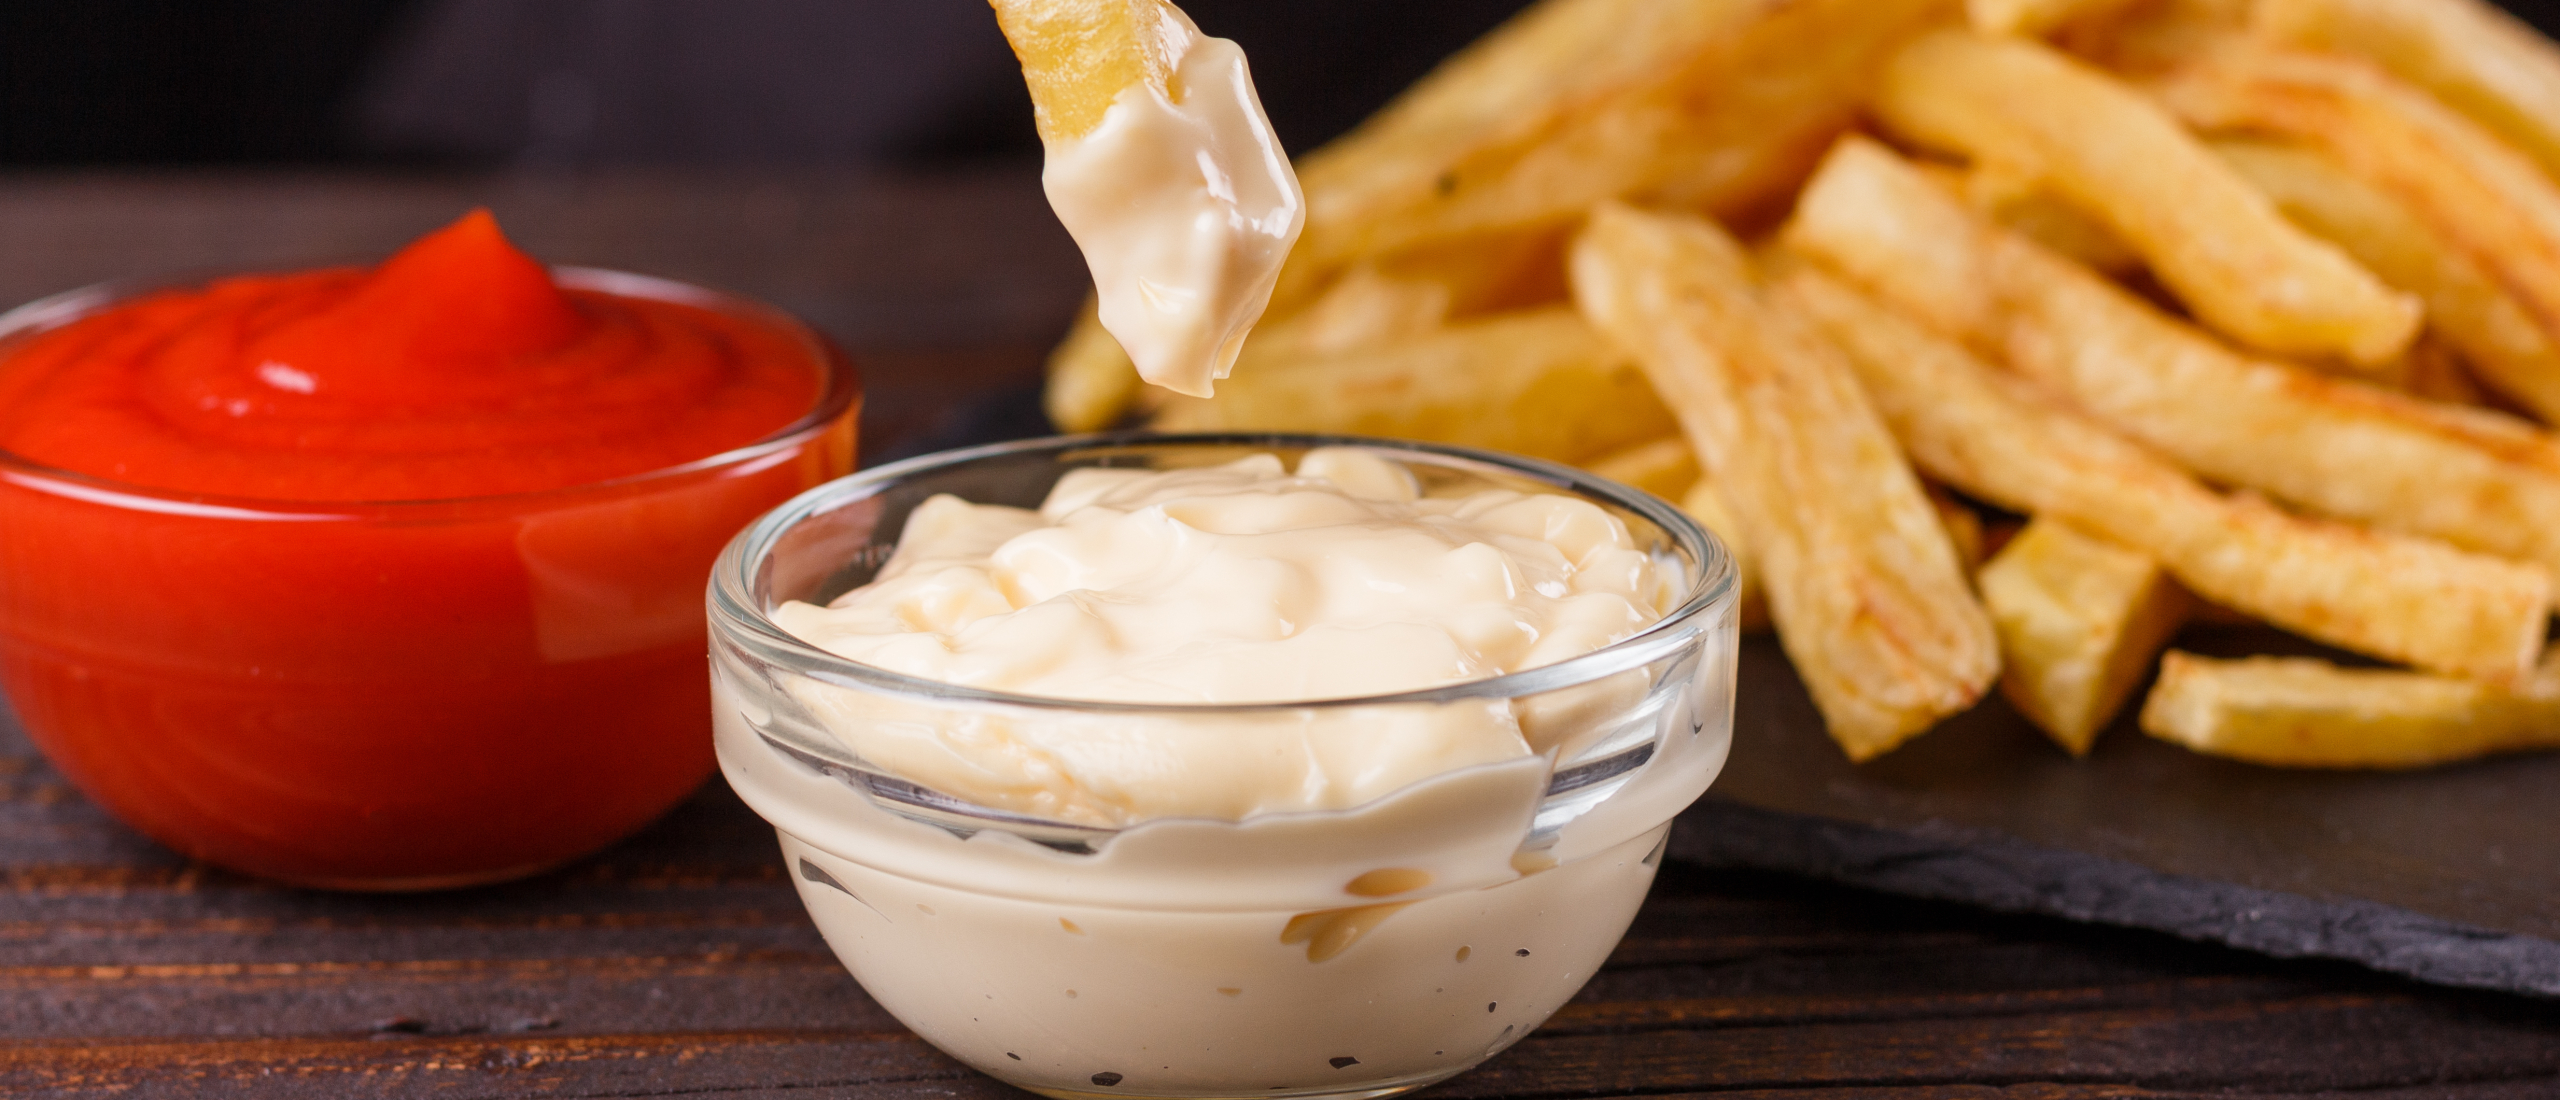 Gezond alternatief voor mayonaise